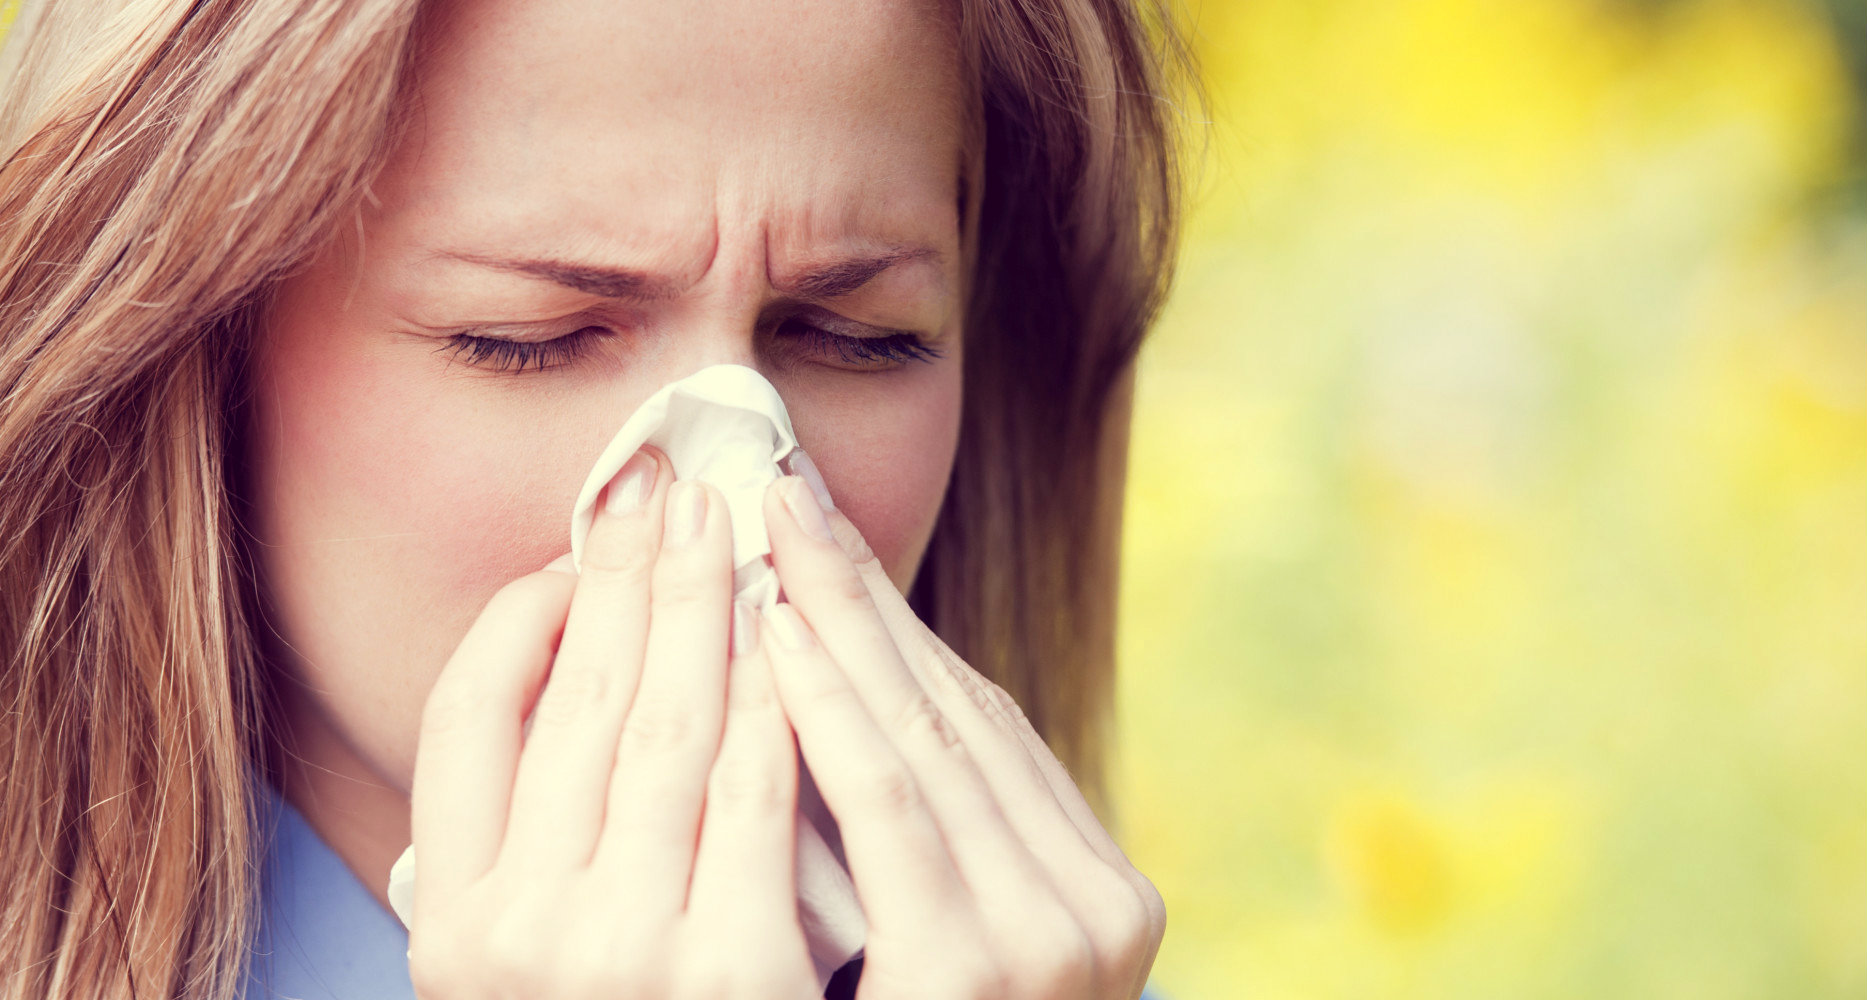 Αλλεργίες: Με εννέα φυσικούς τρόπους αντιμετωπίζονται τα συμπτώματα